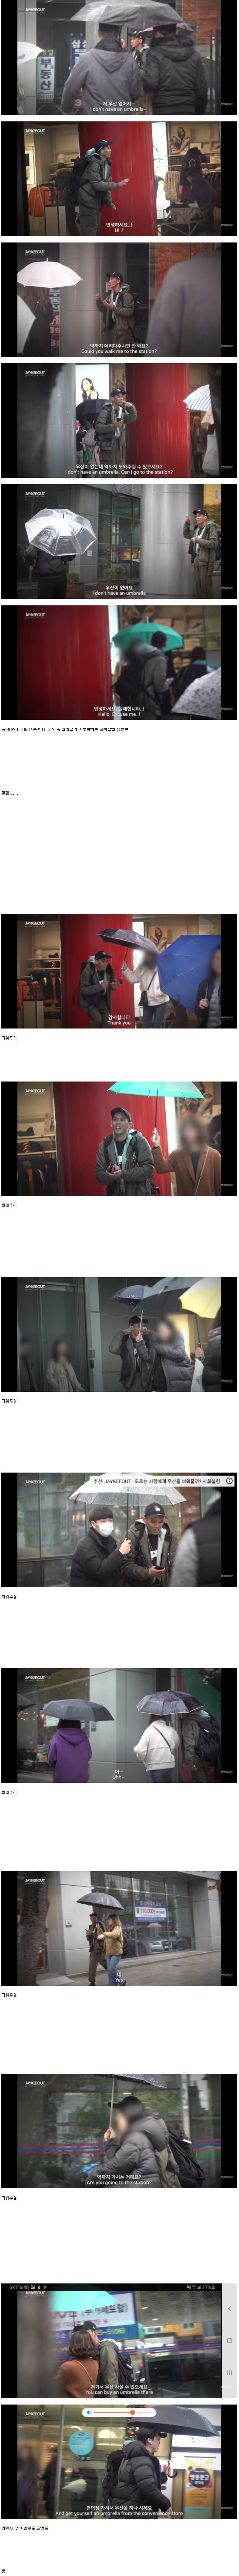 한국에서 동남아인이 우산 좀 씌워달라고 하면